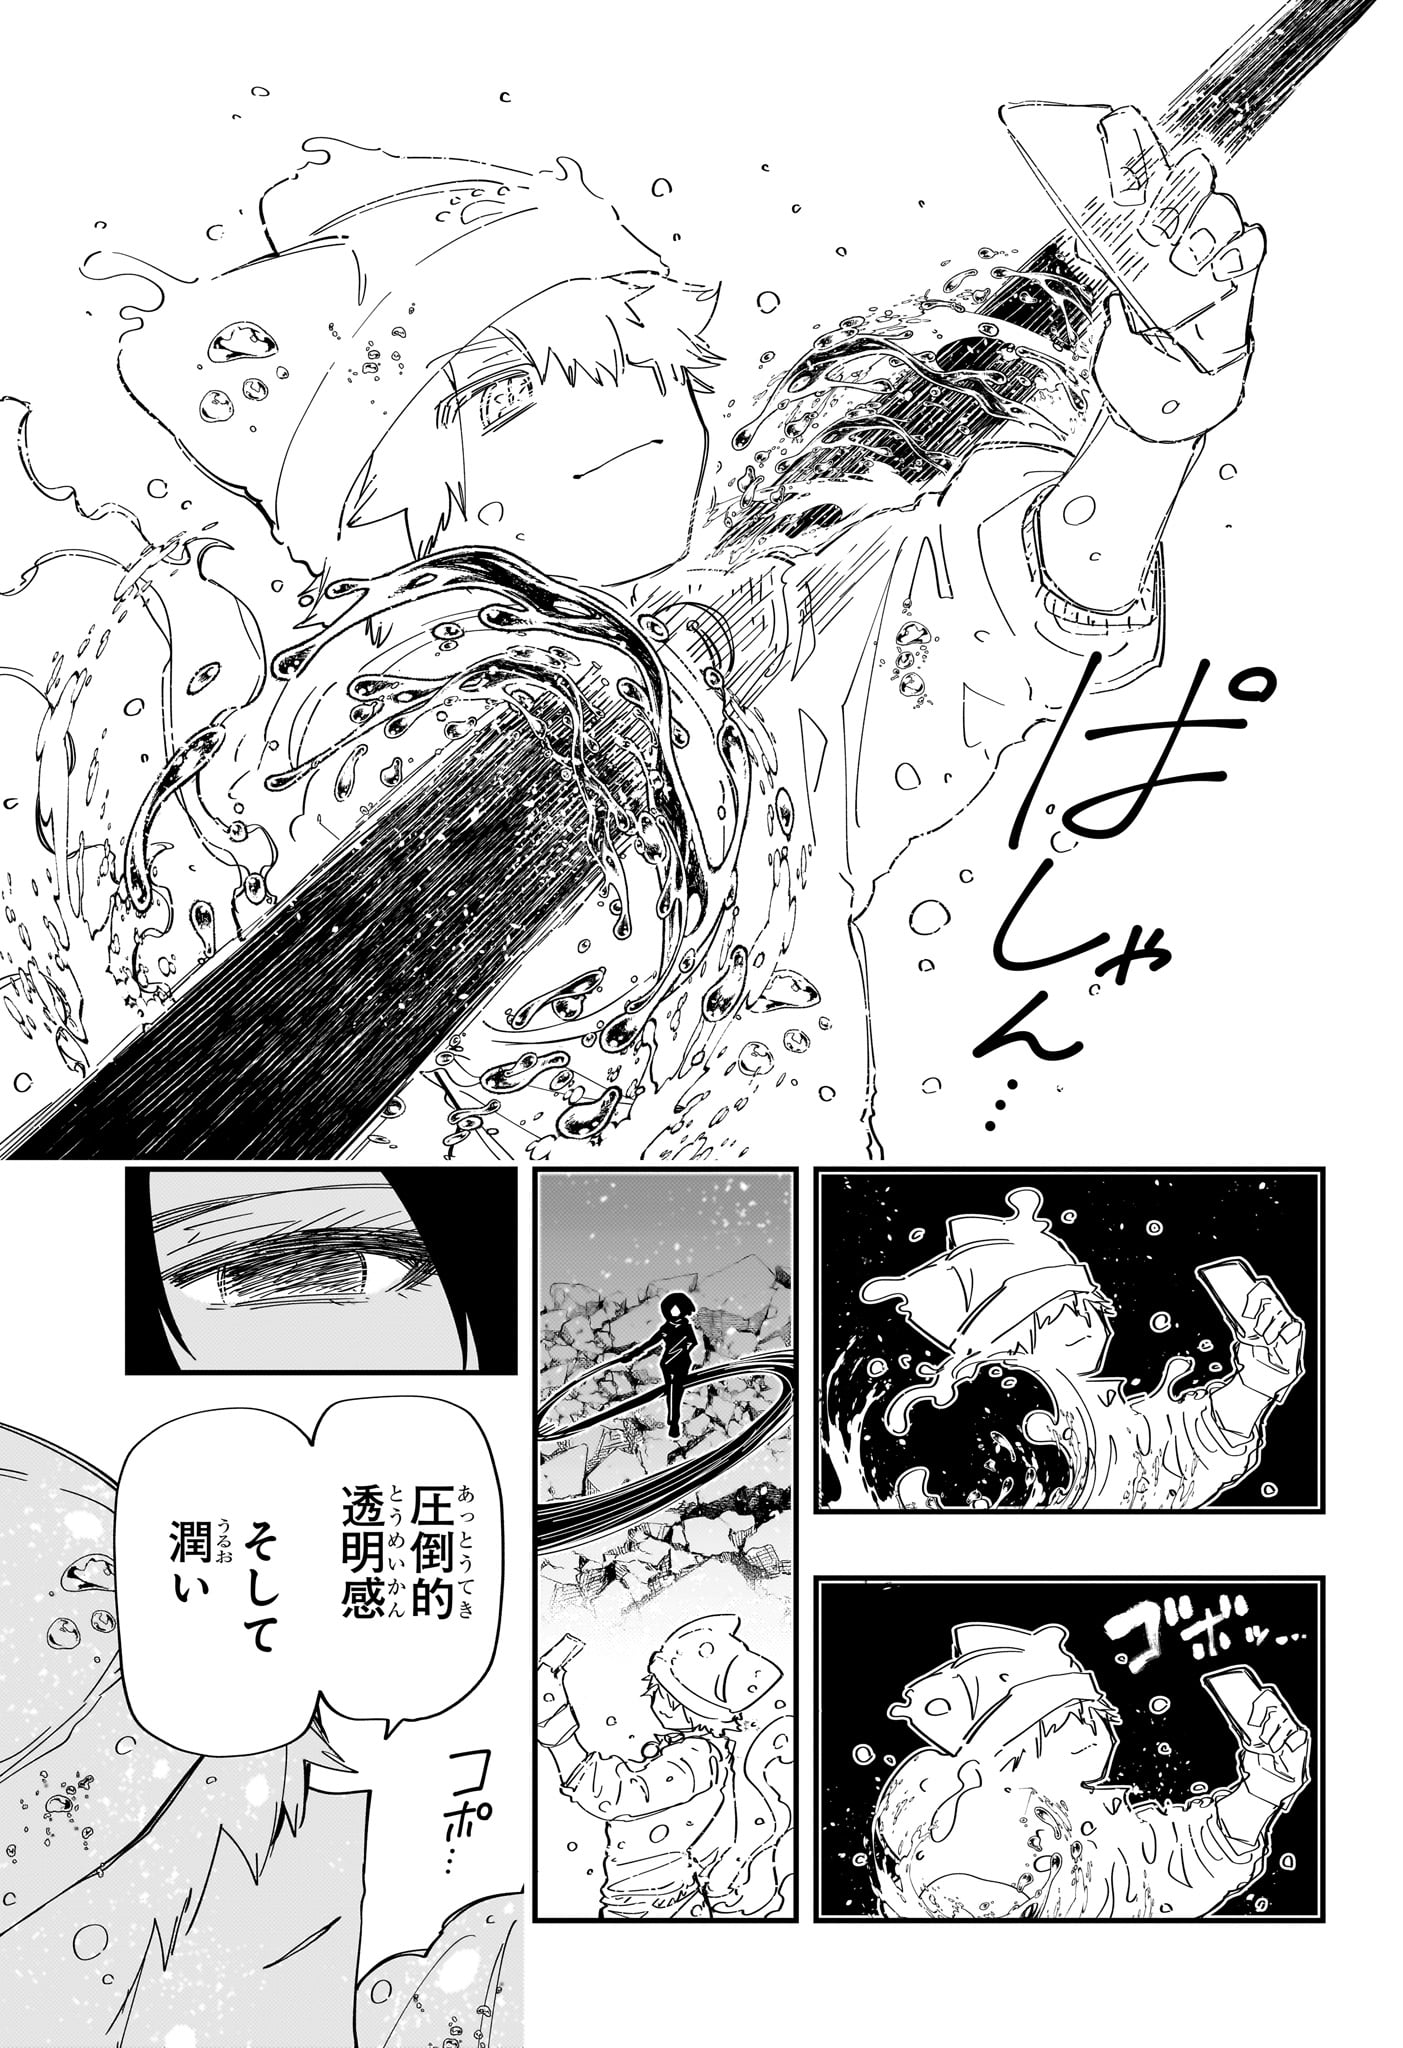 Yozakura-san Chi no Daisakusen - Chapter 233 - Page 3